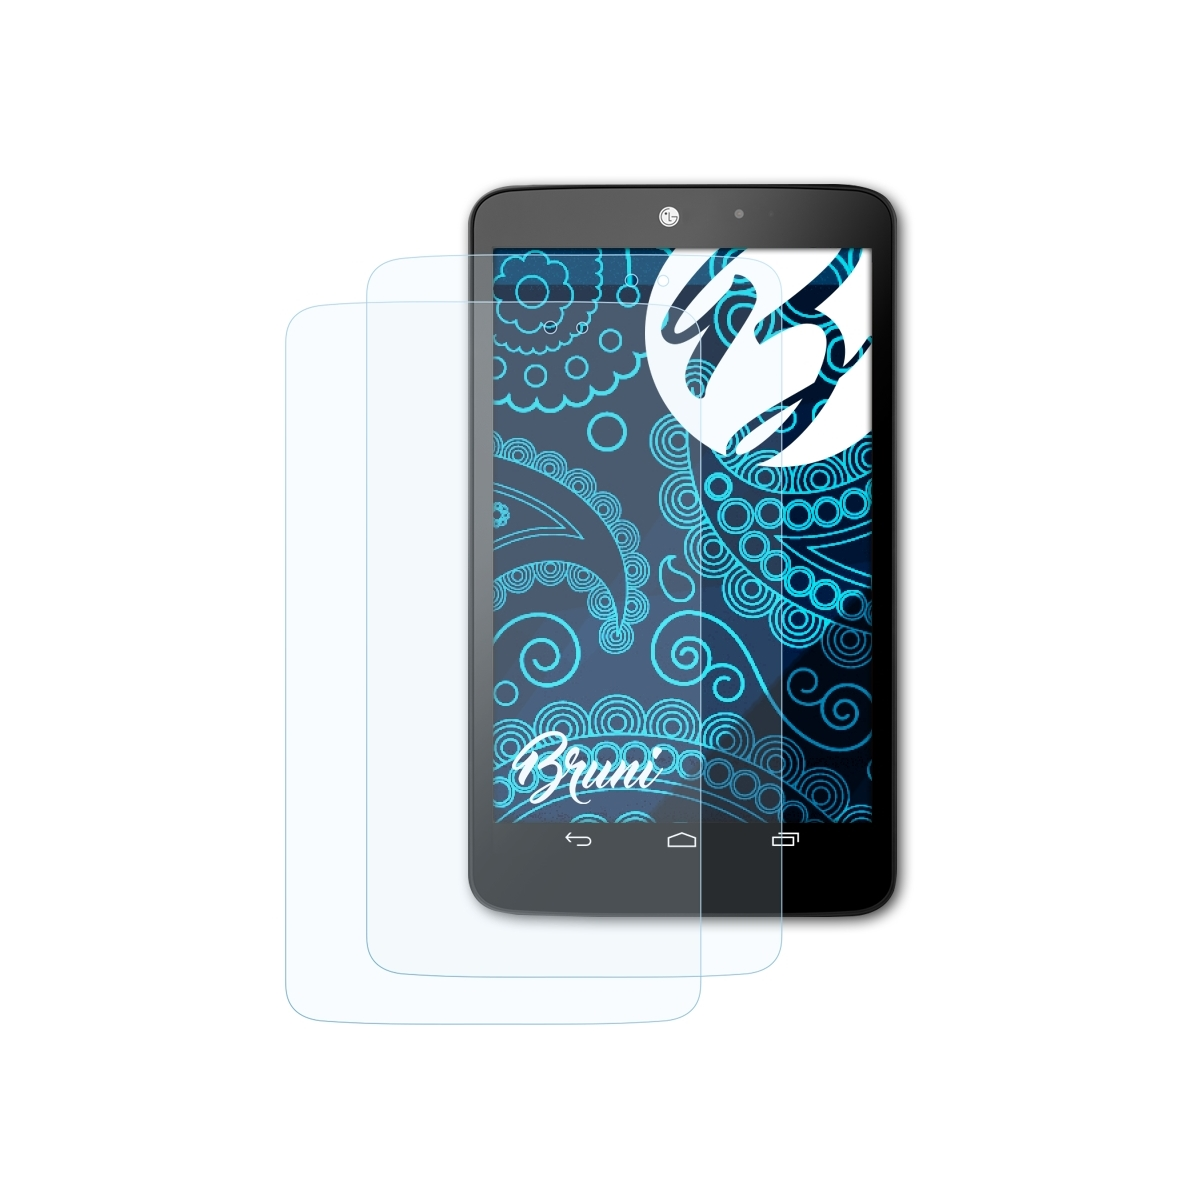 LG 2x G 8.3) Pad Schutzfolie(für BRUNI Basics-Clear